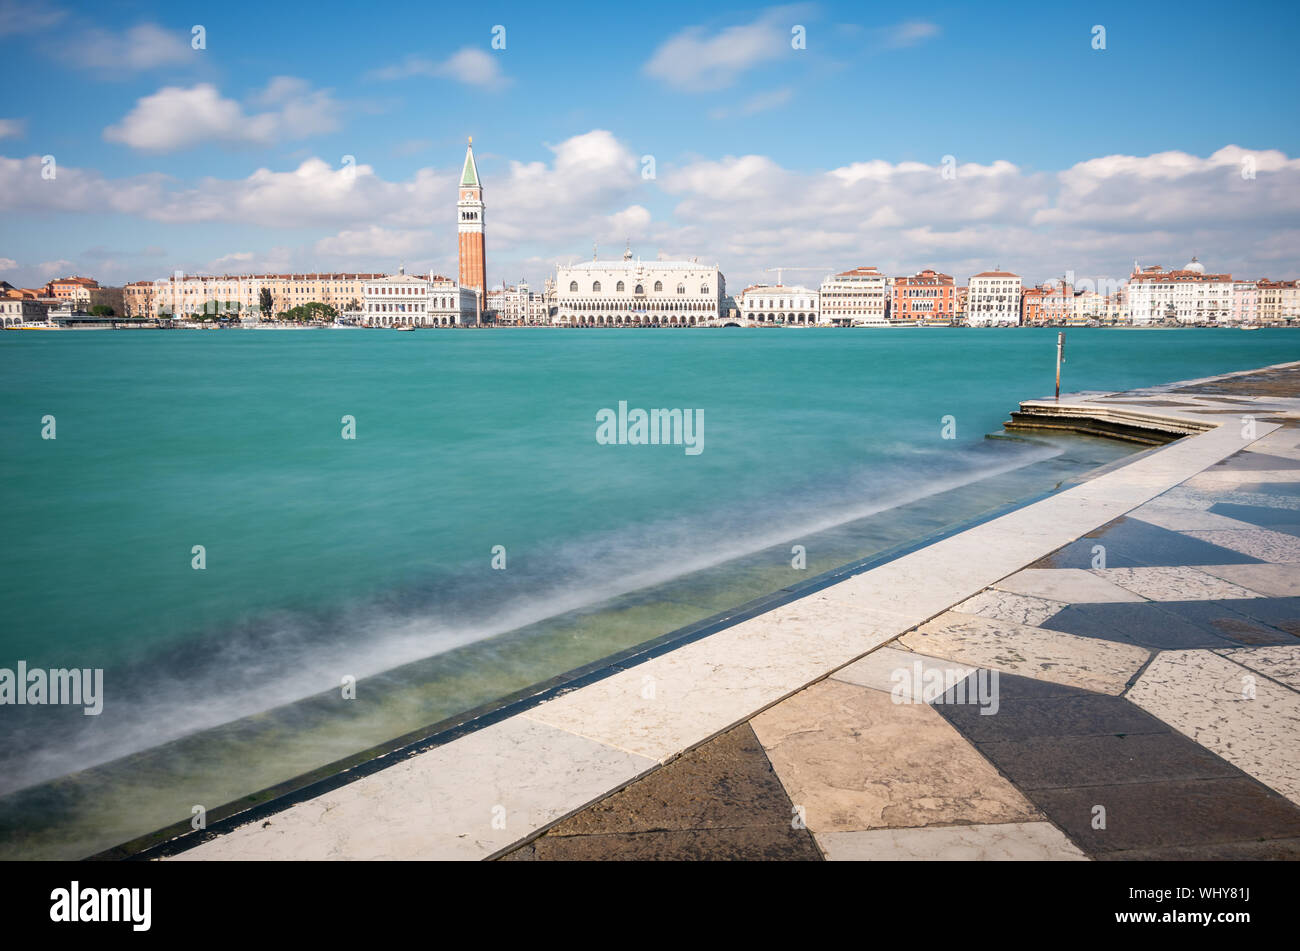 Langzeitansicht des Markusplatzes, des Dogenpalastes, des Markusplatzes und des Canale Grande vom Ufer des San Giorgio Maggiore. Venedig. Italien Stockfoto